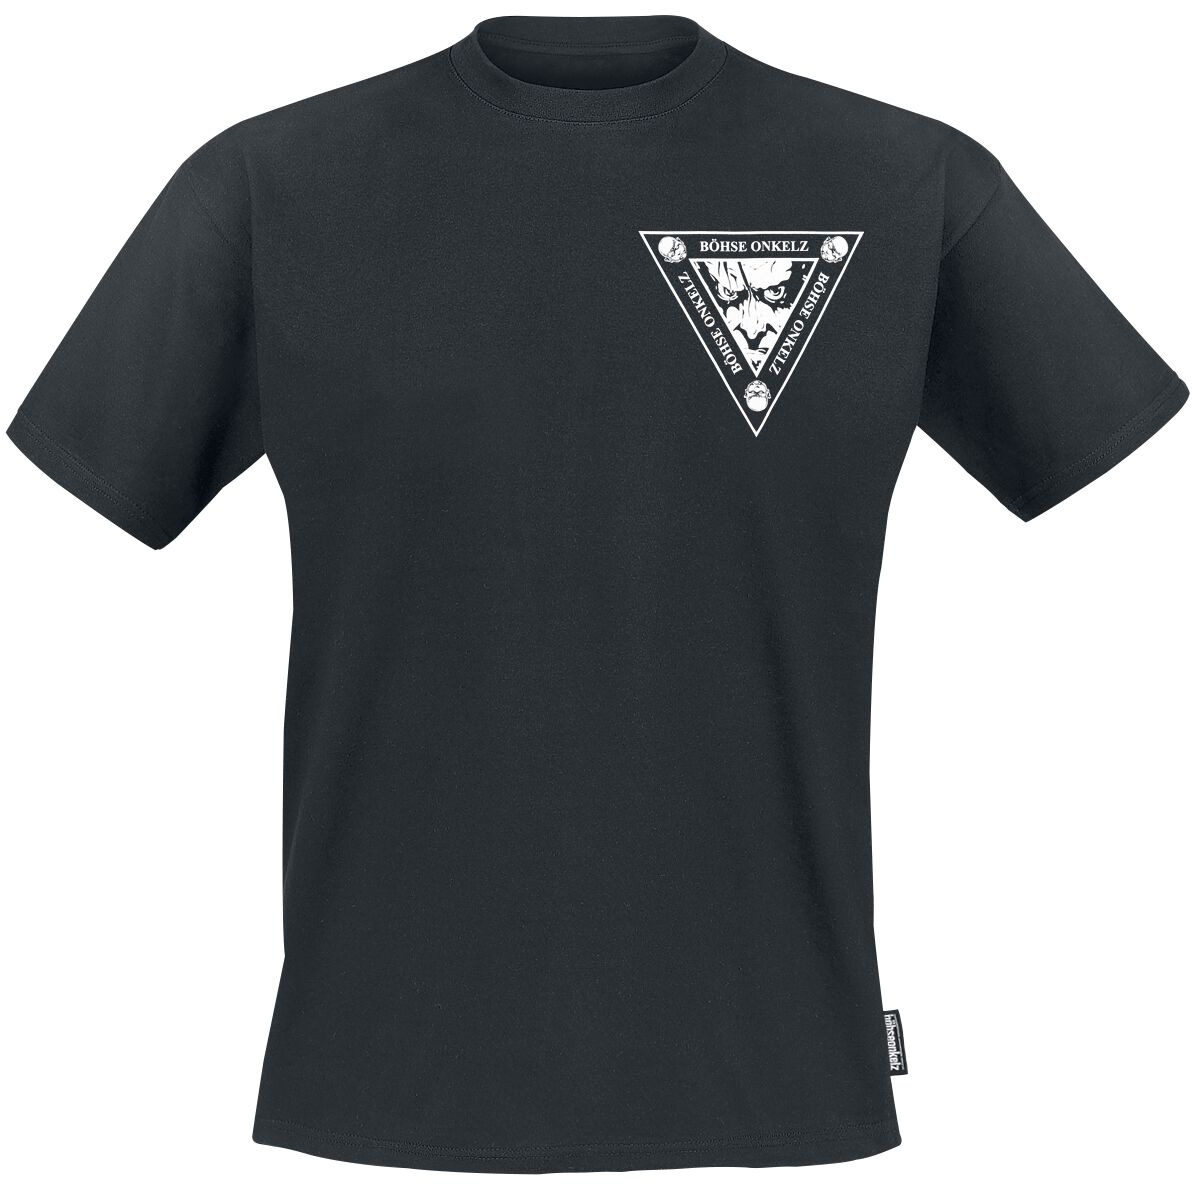 Böhse Onkelz T-Shirt - Es ist soweit 1 - S bis 5XL - für Männer - Größe 3XL - schwarz  - Lizenziertes Merchandise!